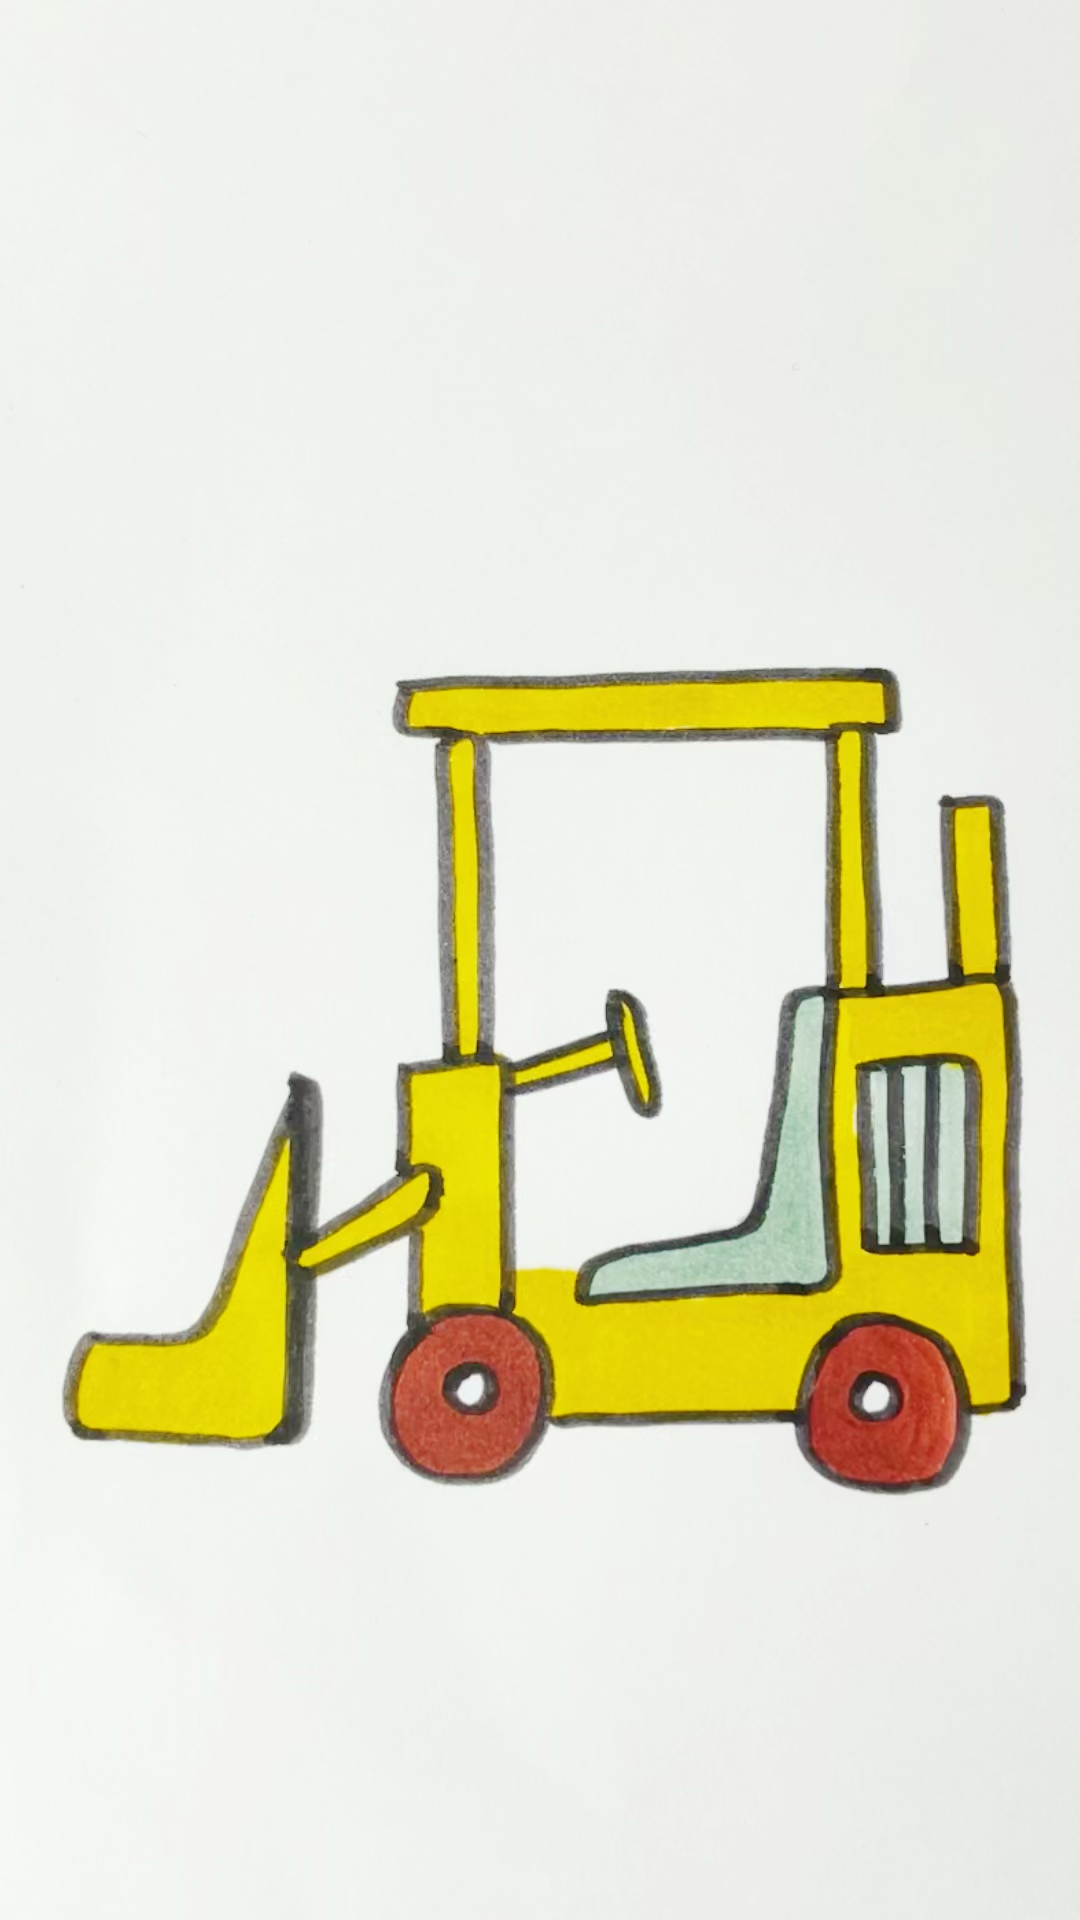 画铲车简单画法儿童图片